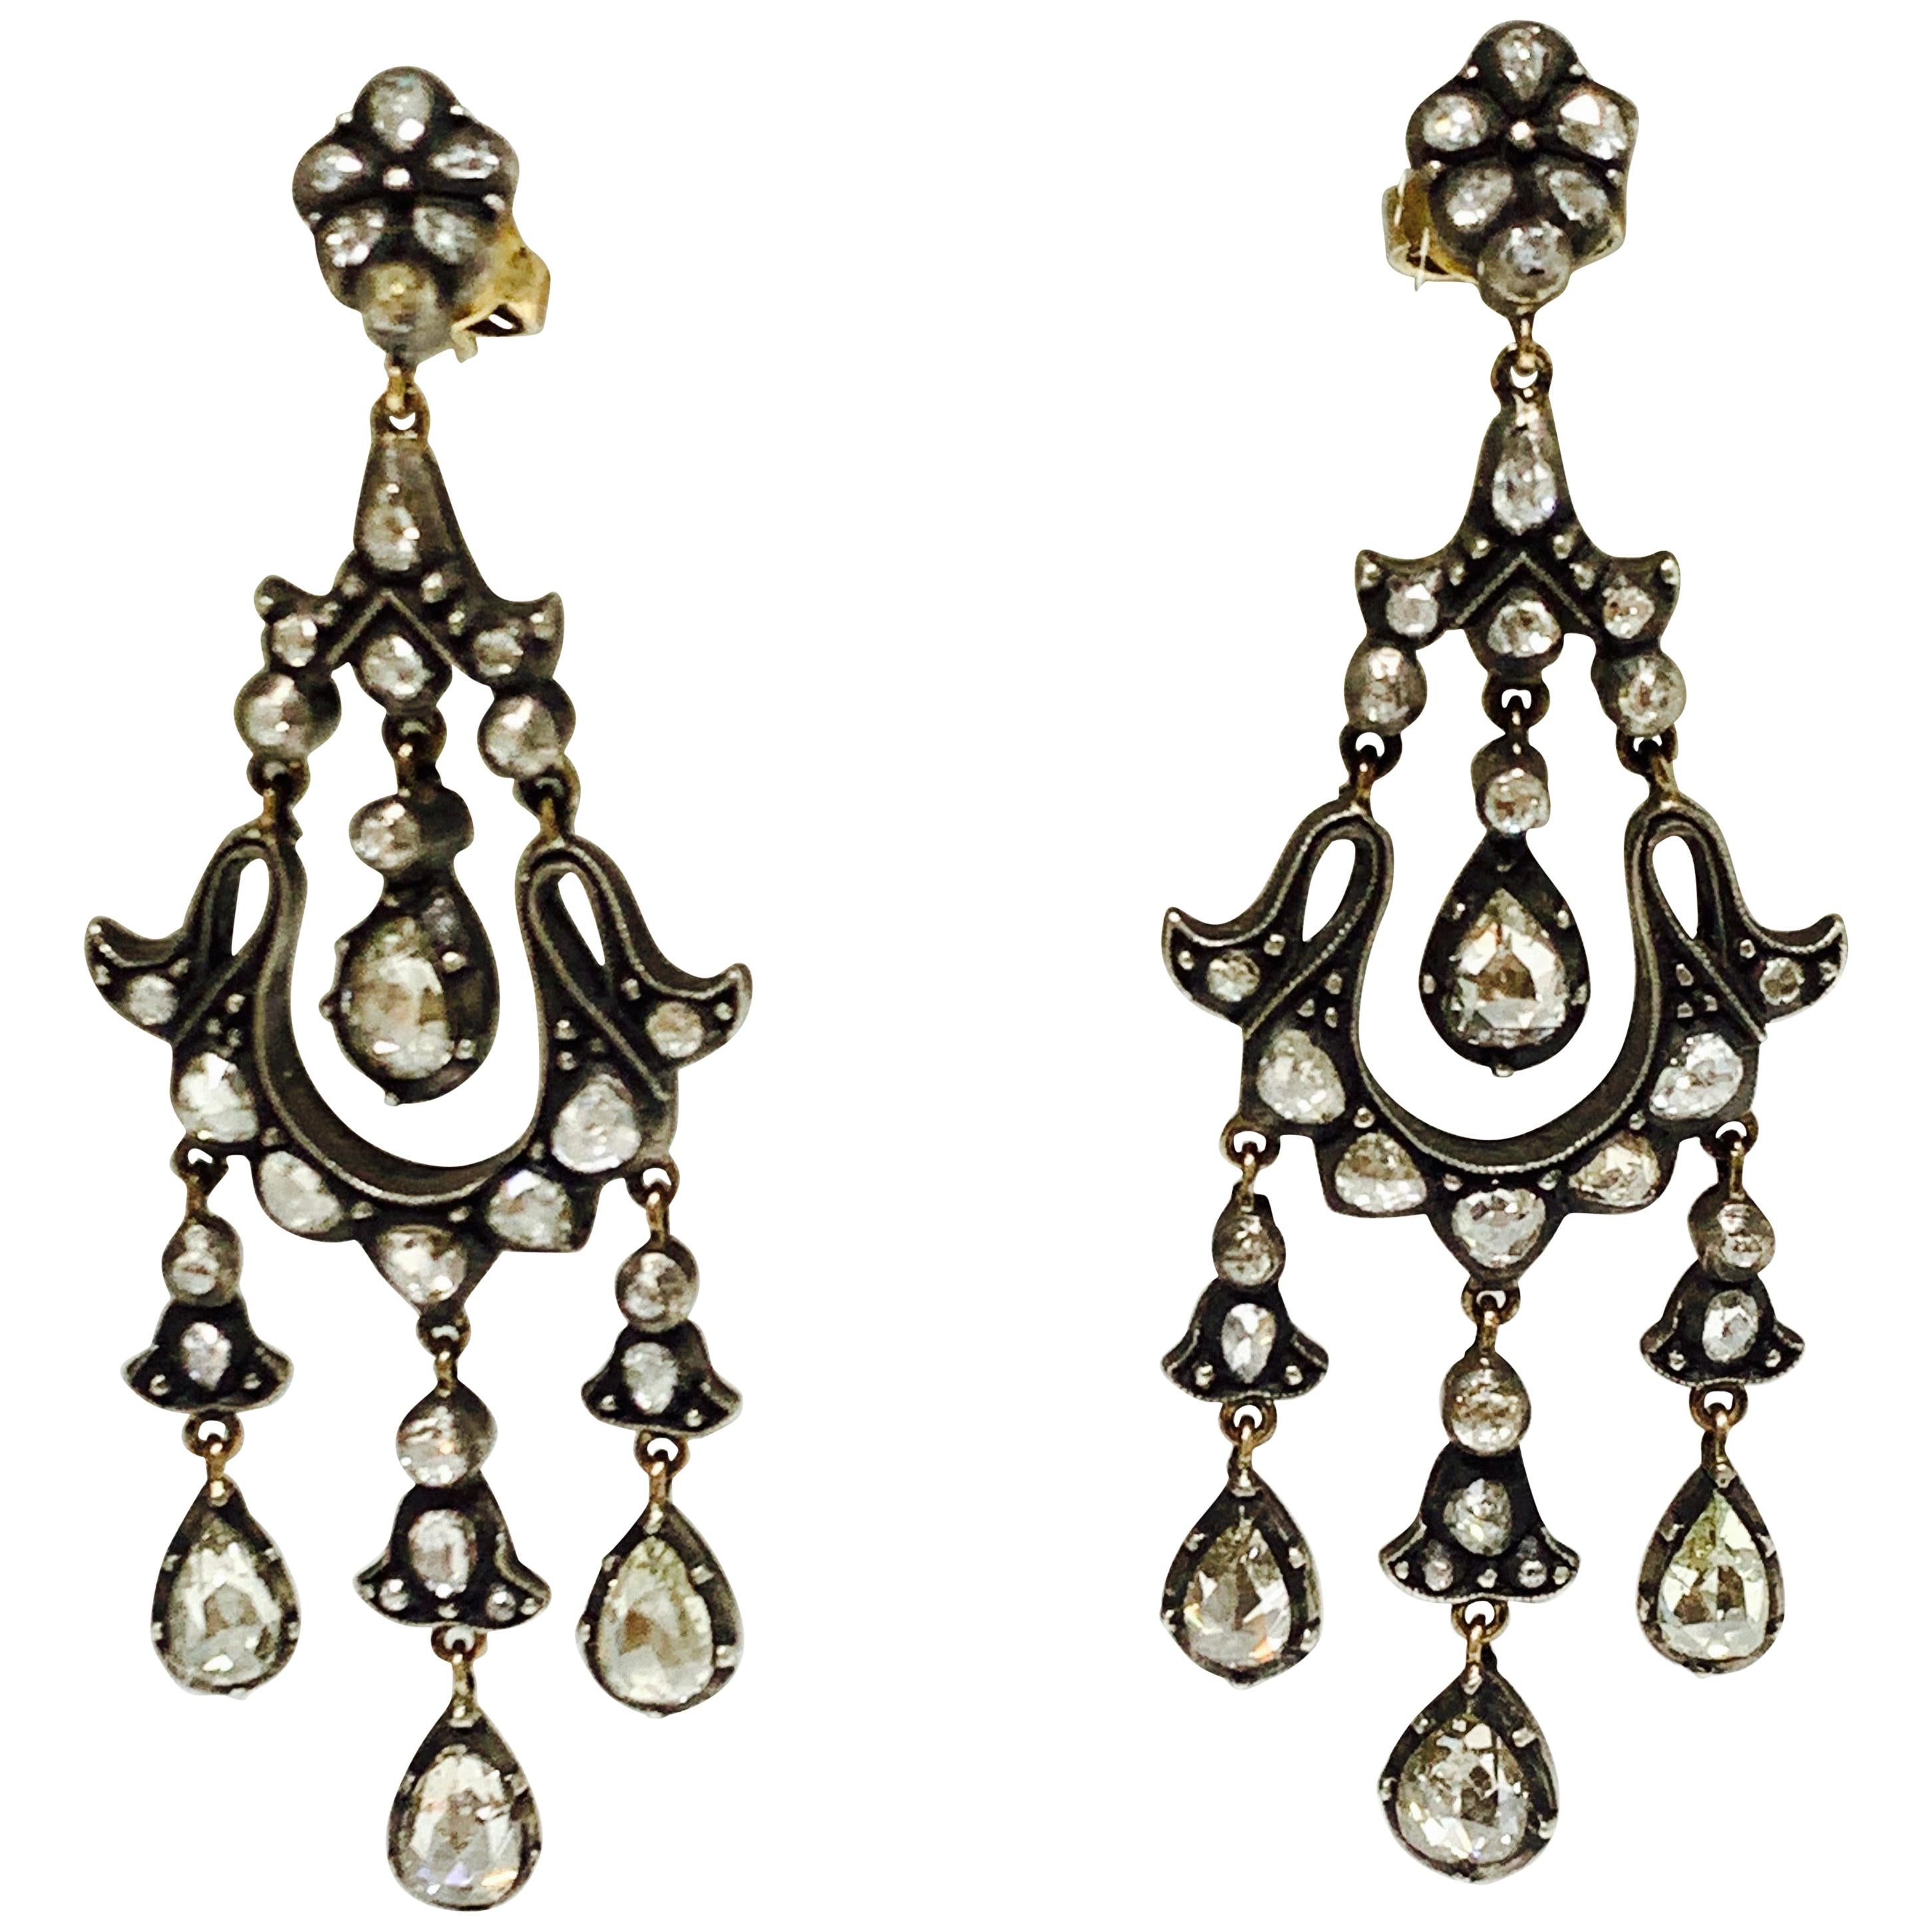 6 Carat Rose Cut Diamond Antique Style Chandelier Earrings in 18 Karat Gold For Sale